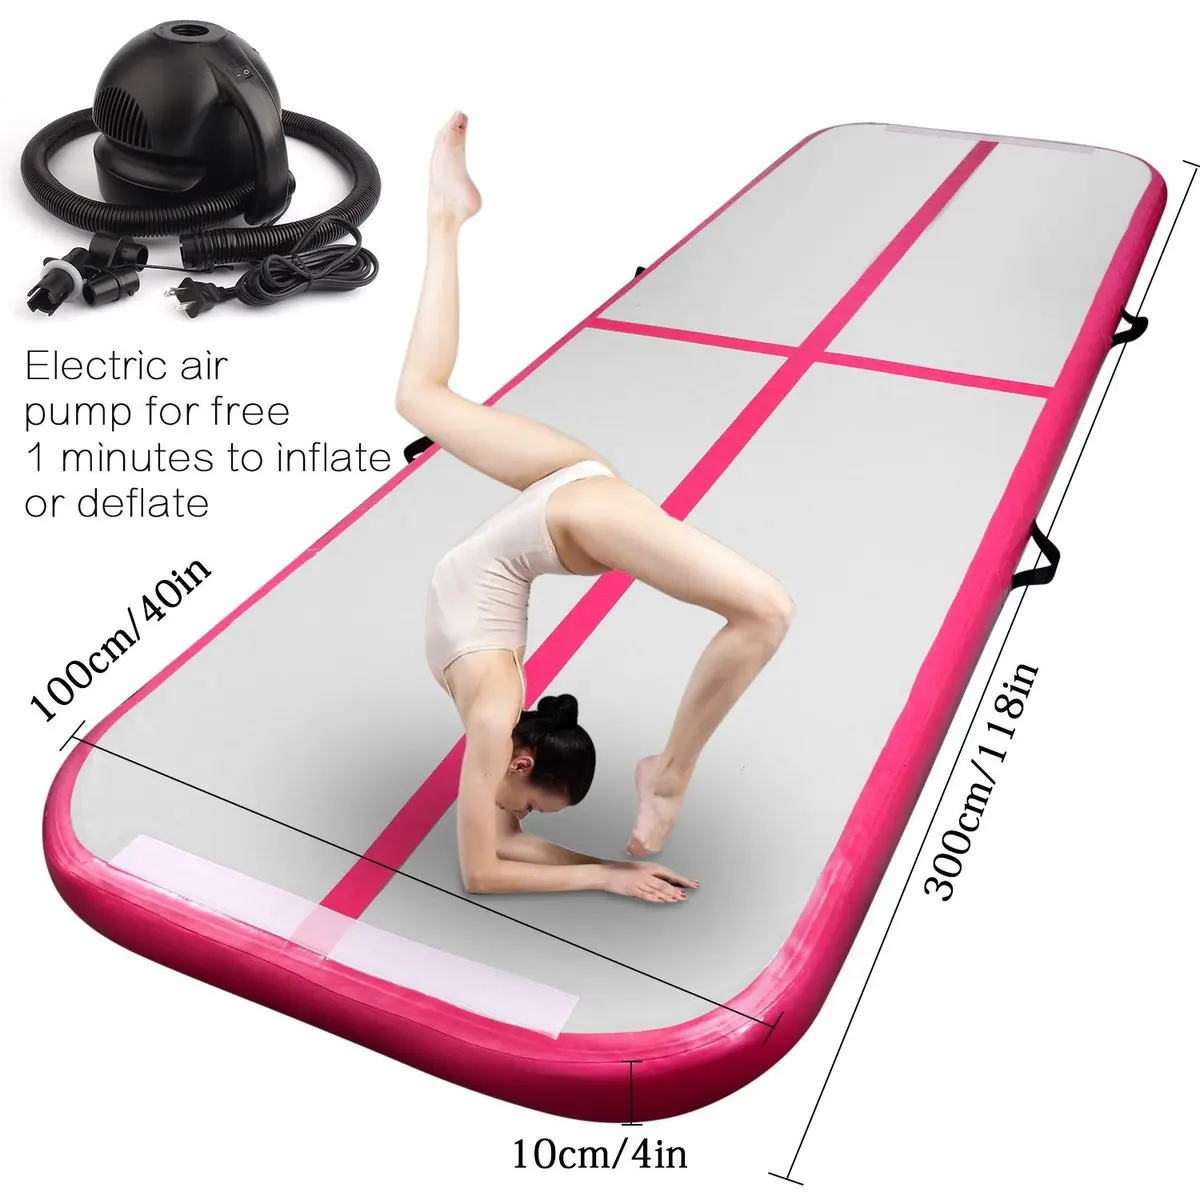 Надувной гимнастический надувной каток с электрическим воздушным насосом для домашнего использования/тренировок/Черлидинга/пляжа